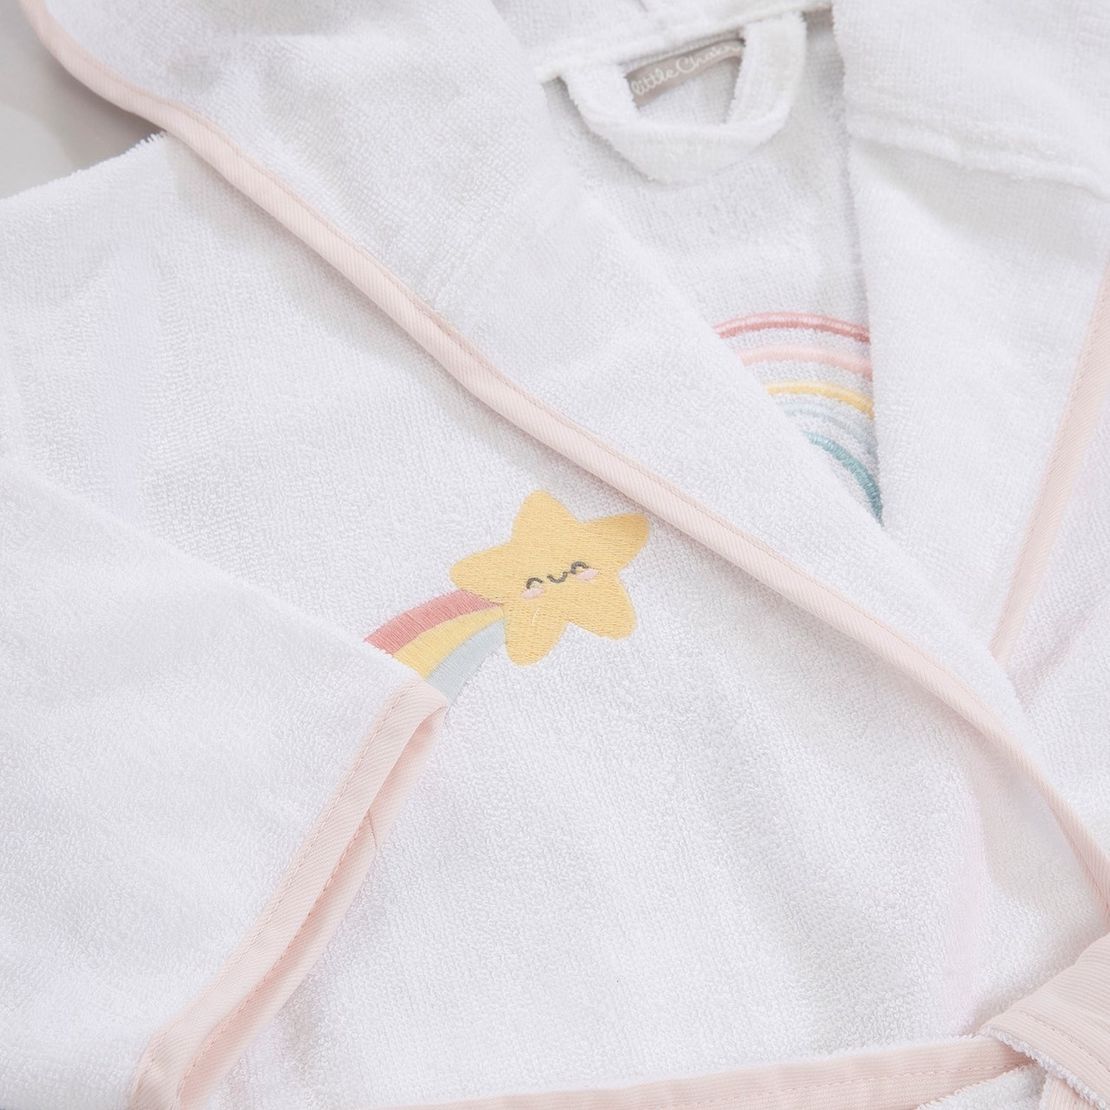 Детский махровый халат Rainbow, для девочки с аппликацией Радуга единорога 3-4 года, белый